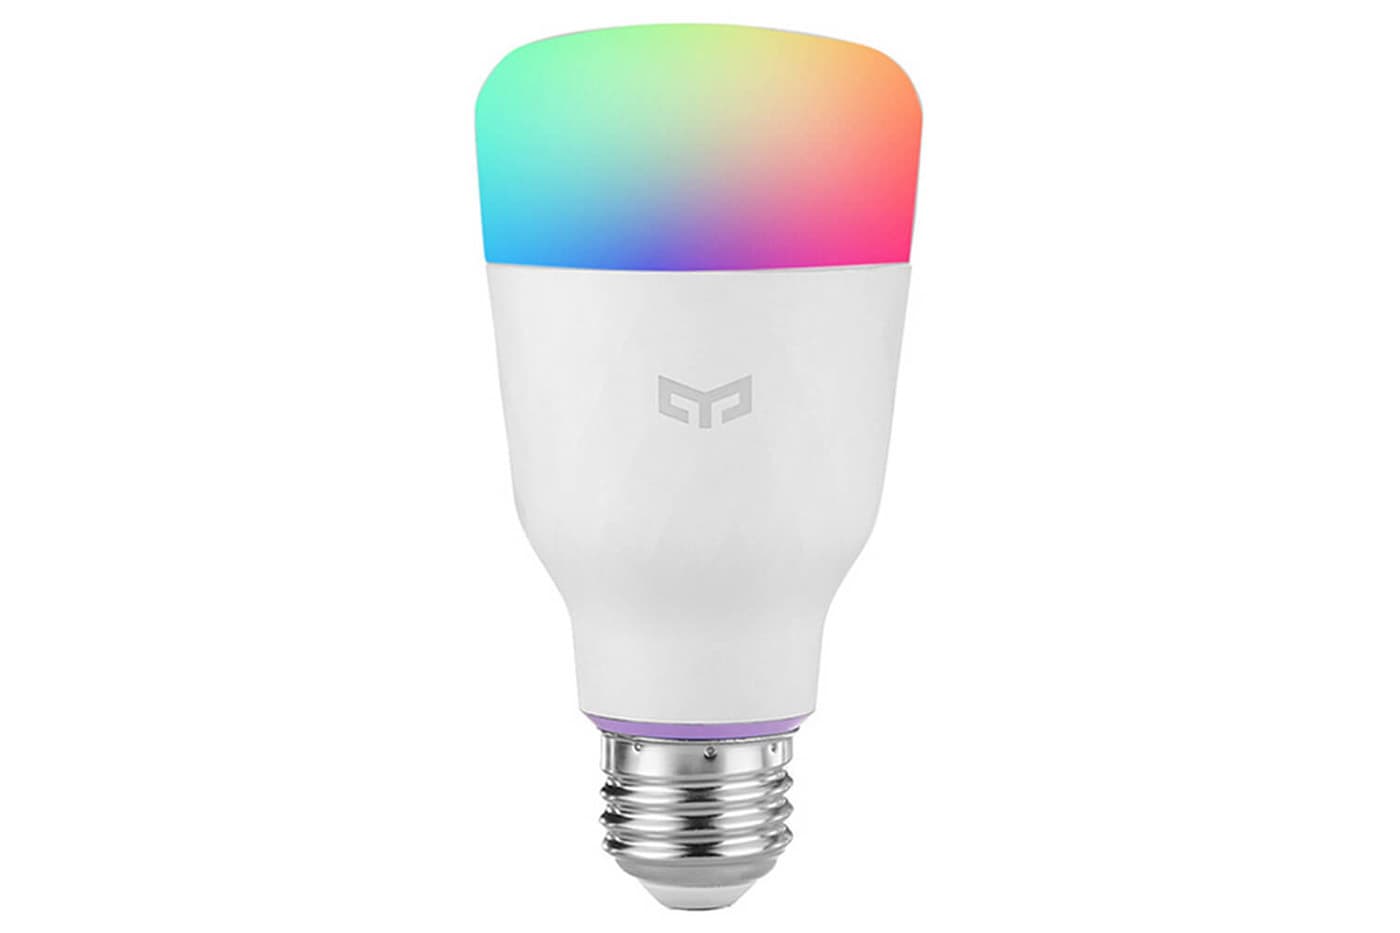 Yeelight Smart LED - A melhor lâmpada inteligente que podes ter em casa 